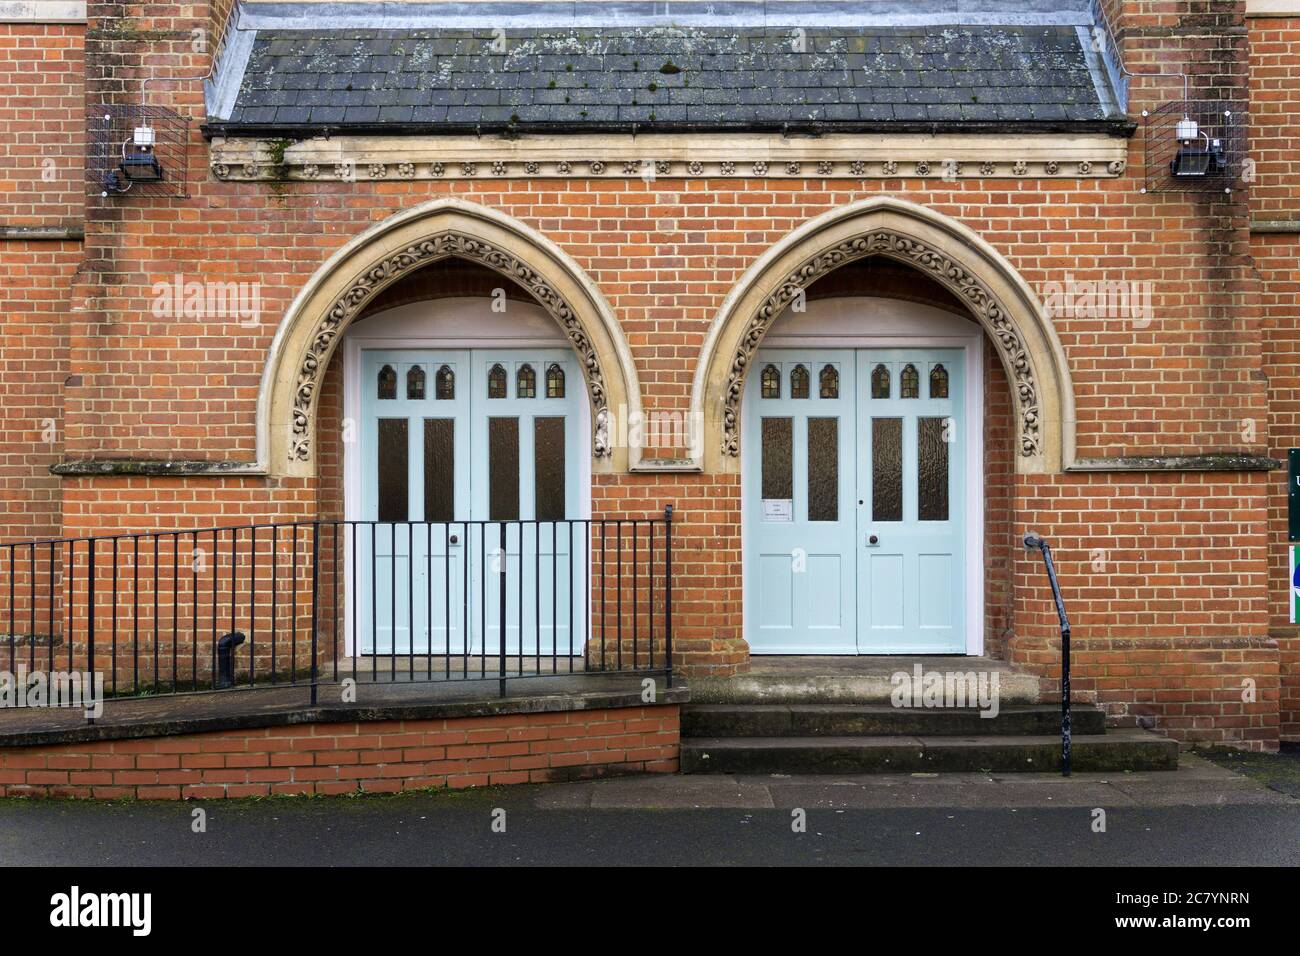 Doppeltüren mit Bogengewölbe am Eingang zur United Reformed Church, Newport Pagnell, Buckinghamshire, Großbritannien; Gebäude stammt aus dem Jahr 1660 Stockfoto